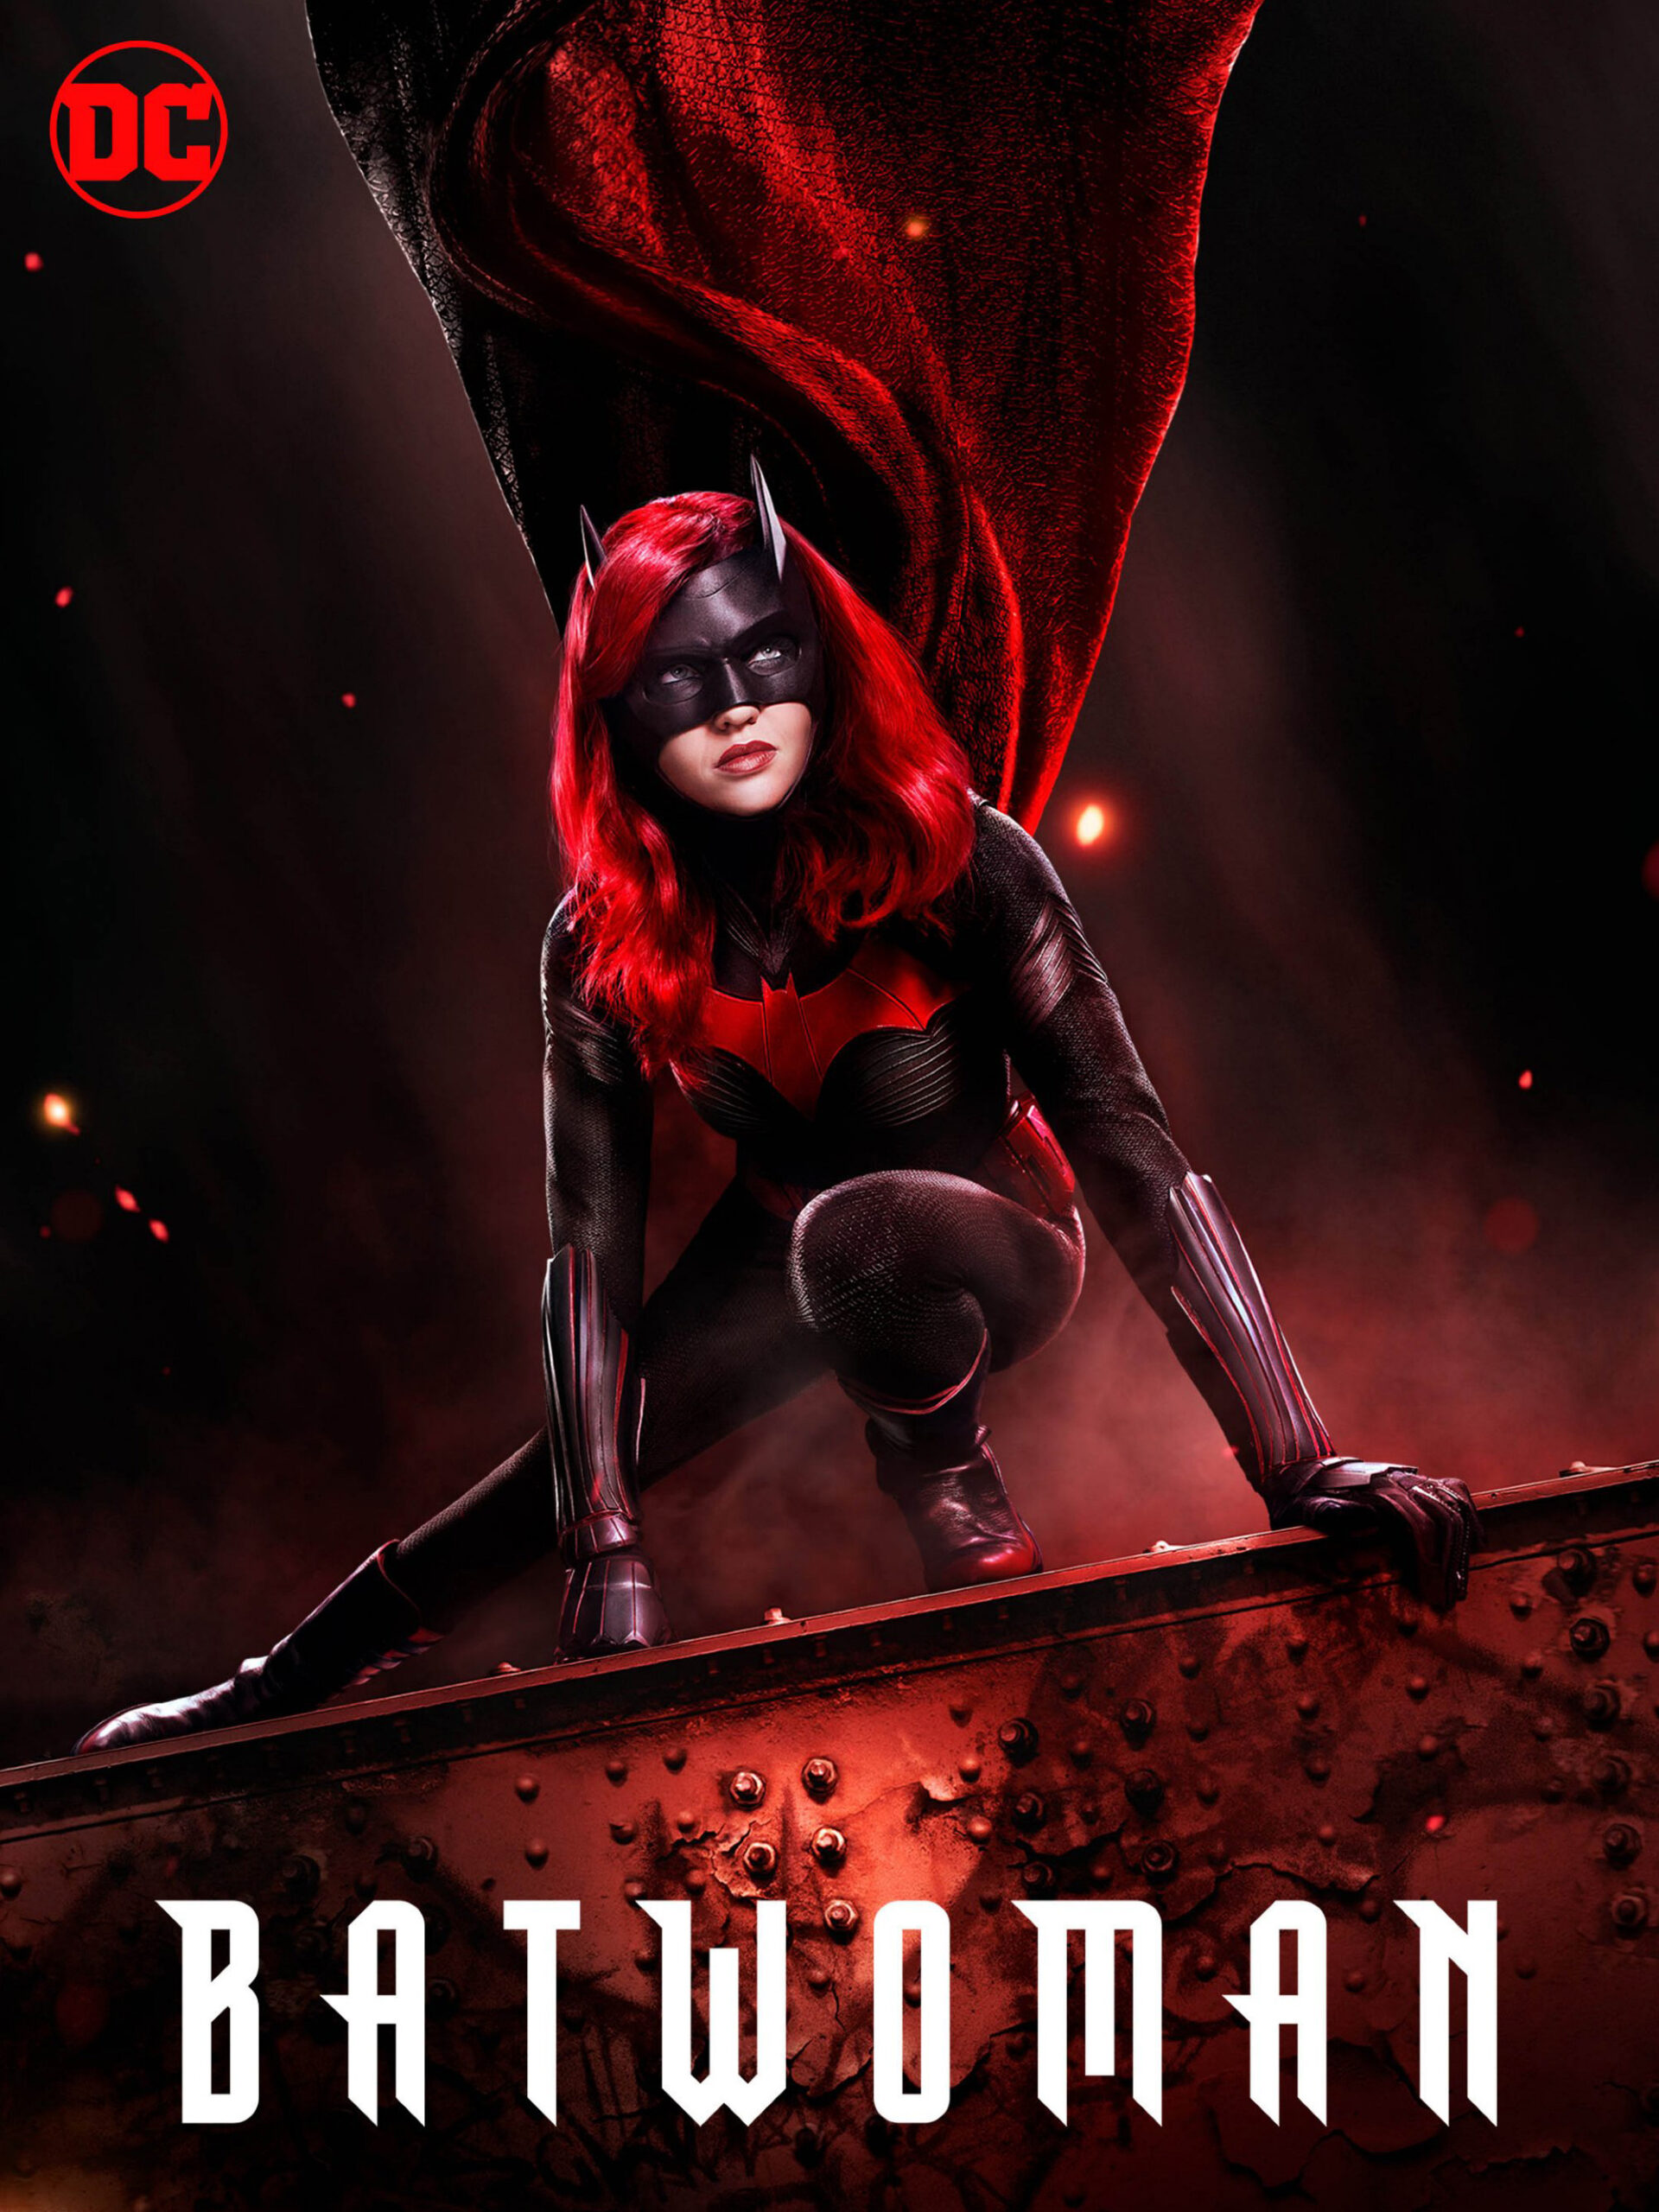 ดูหนังออนไลน์ฟรี Batwoman Season 1 (2019) EP.2 แบทวูแมน ซีซั่น 1 ตอนที่ 2 (Soundtrack)